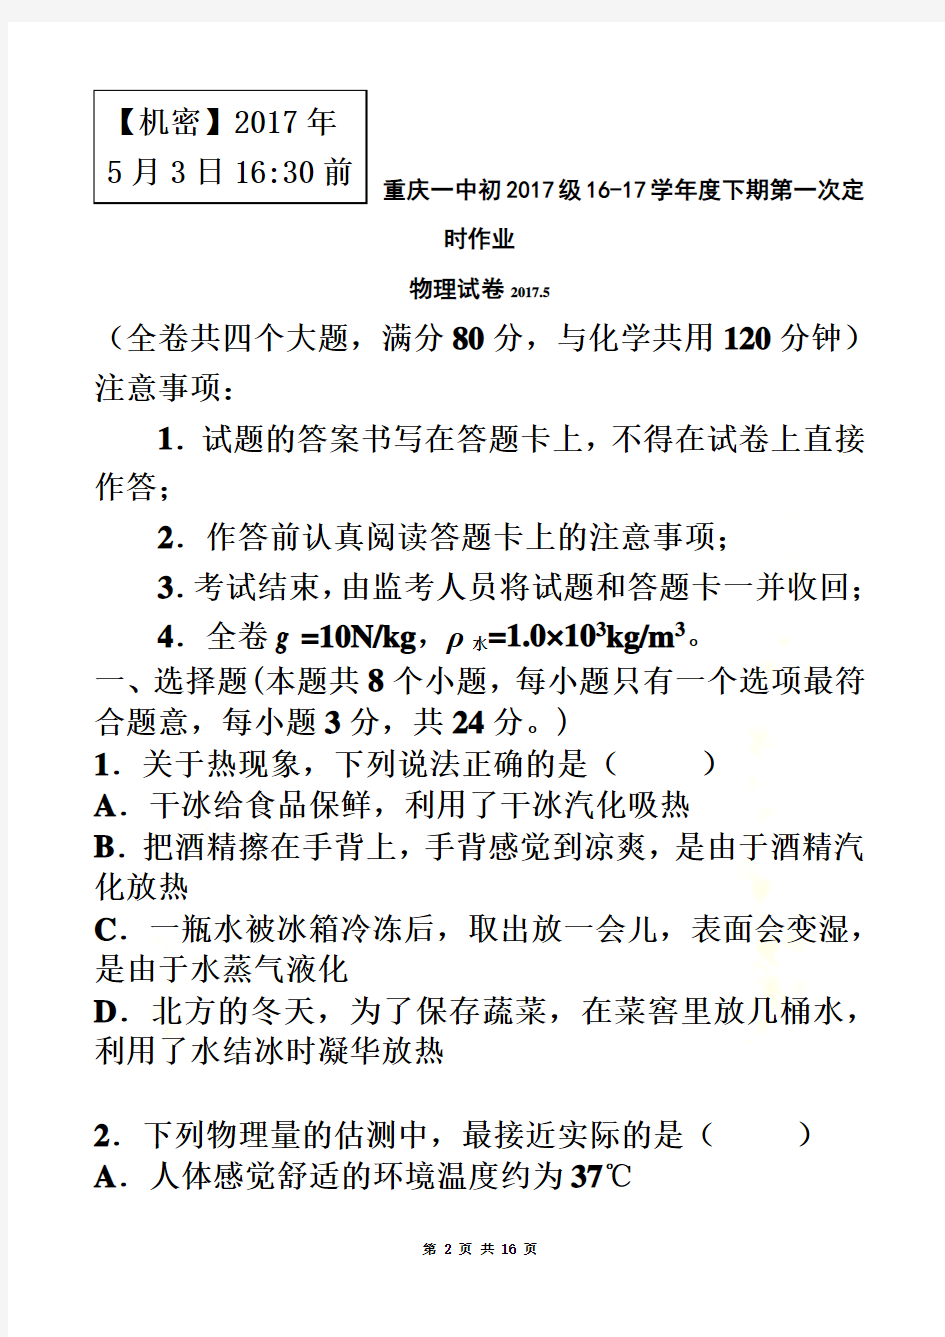 重庆一中初2017级16-17学年度下期第一次定时作业物理试题(九年级一模)